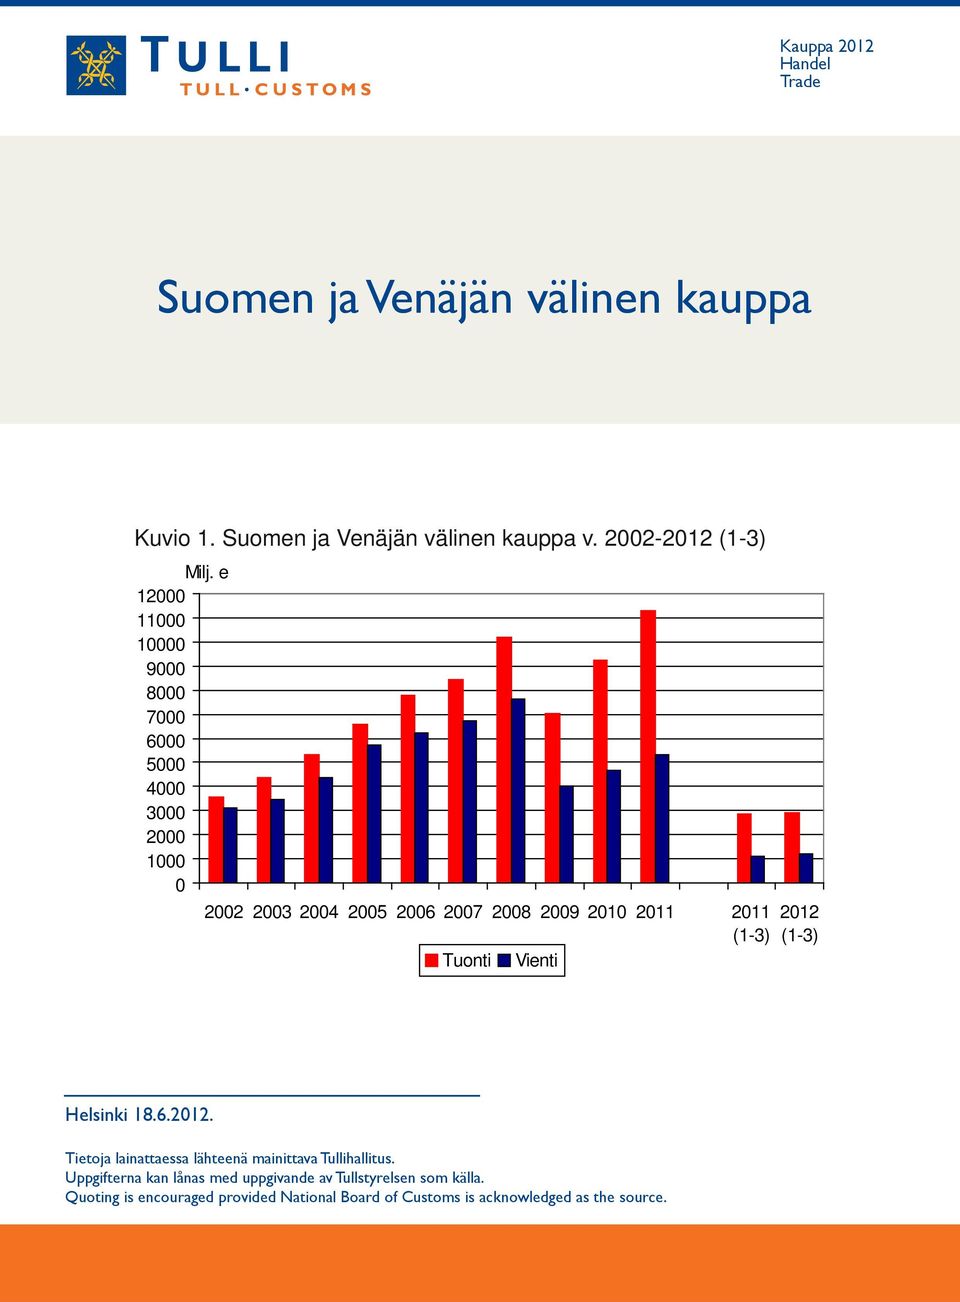 (1-3) Tuonti Vienti 2012 (1-3) Helsinki 18.6.2012. Tietoja lainattaessa lähteenä mainittava Tullihallitus.